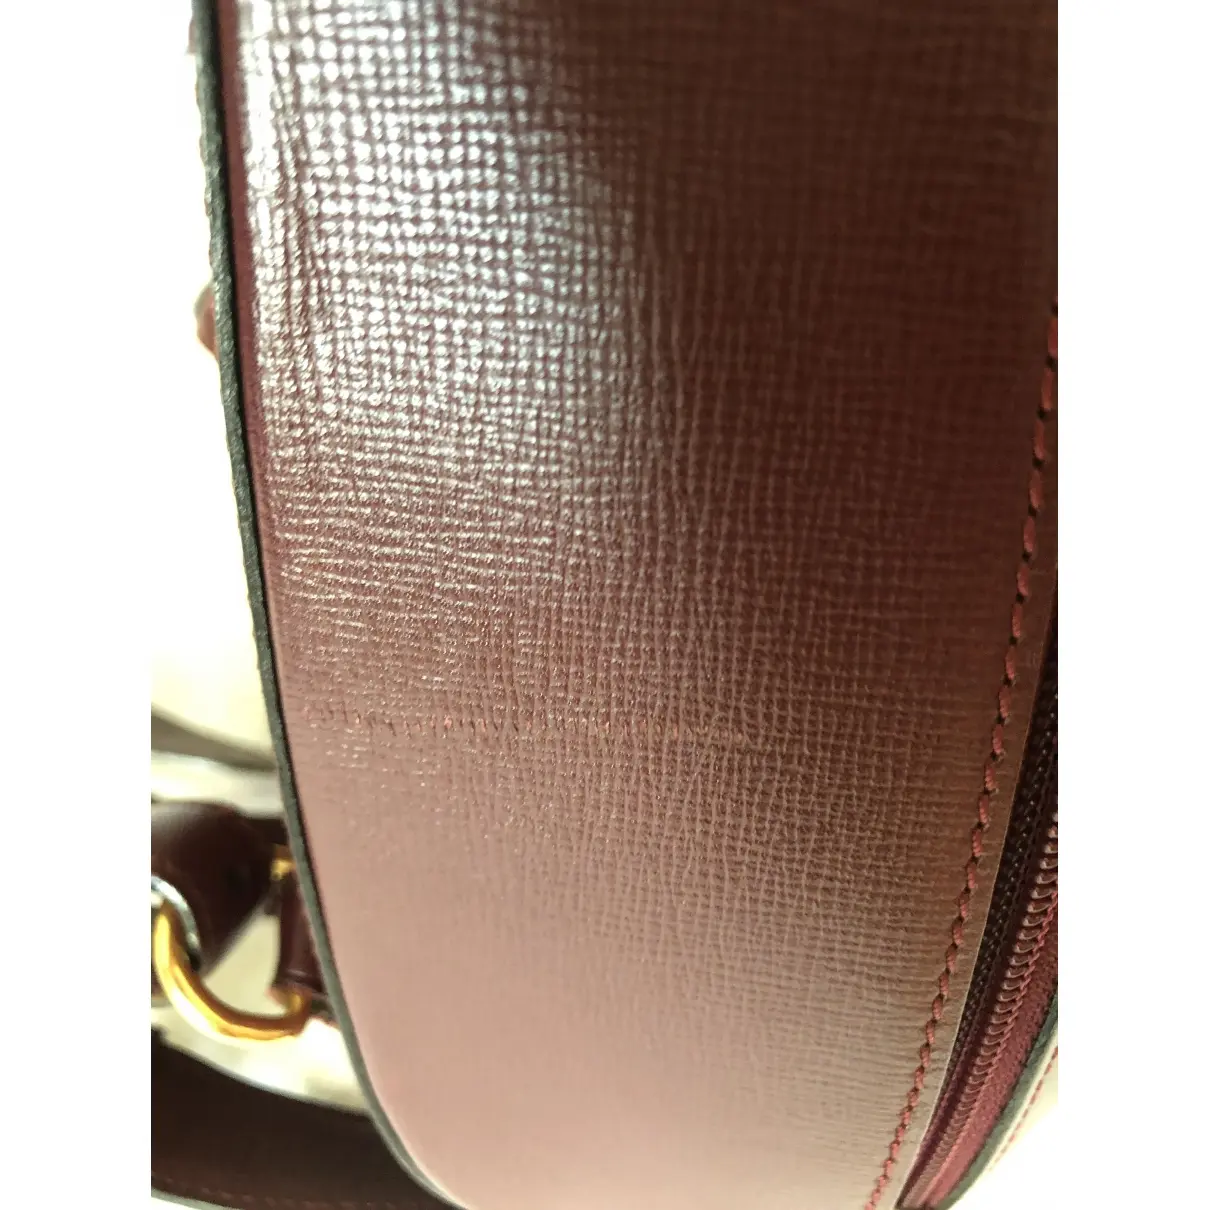 Leather backpack Cartier - Vintage